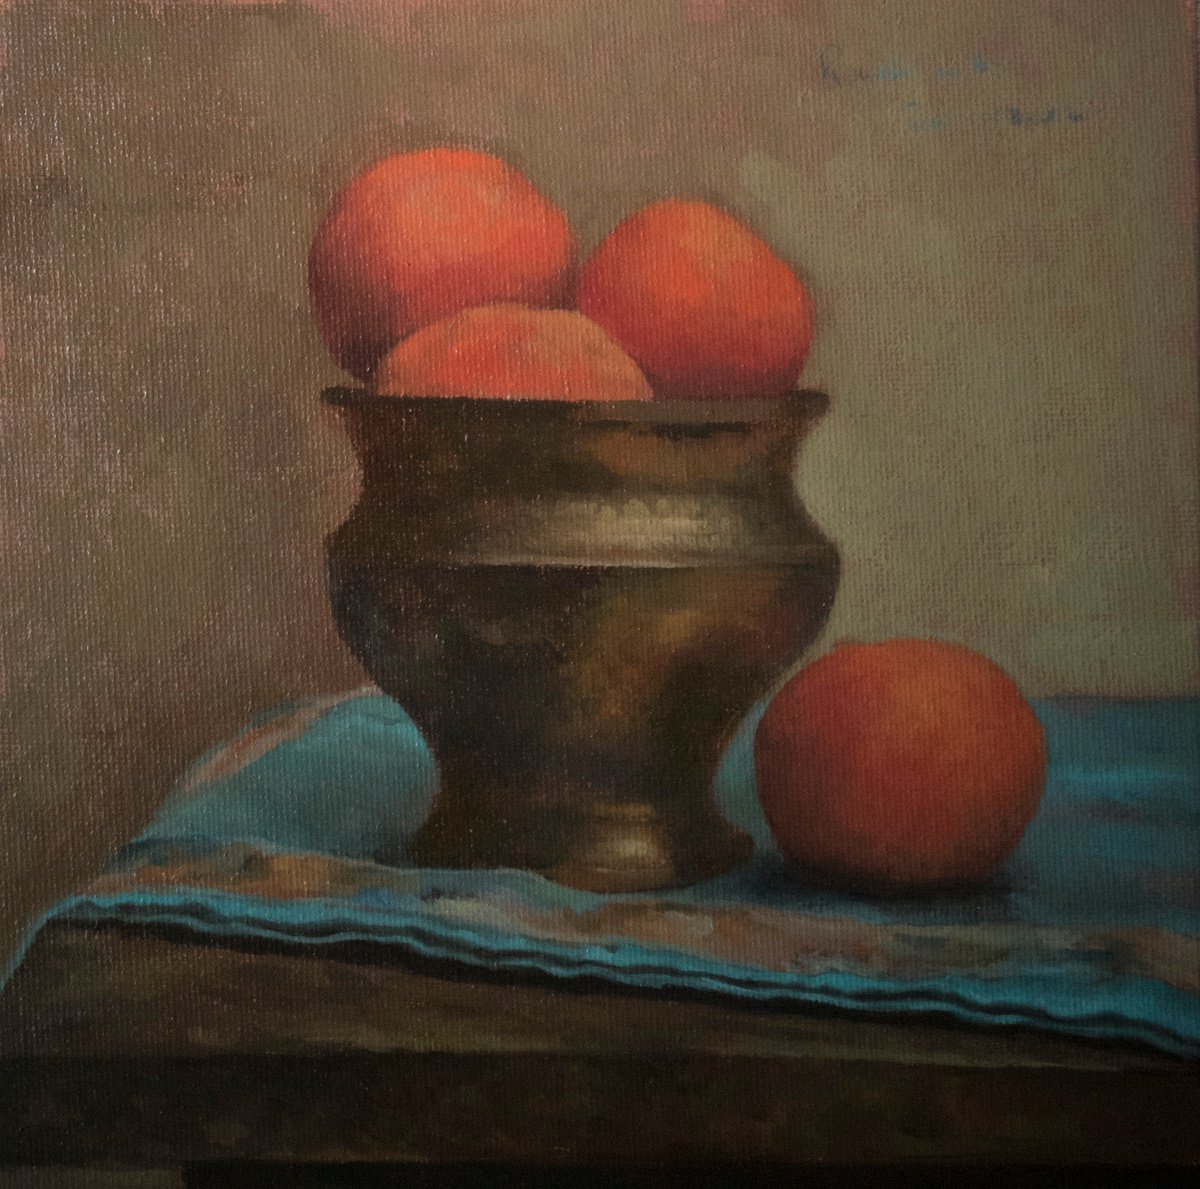 Mandarinas by Radosveta Zhelyazkova